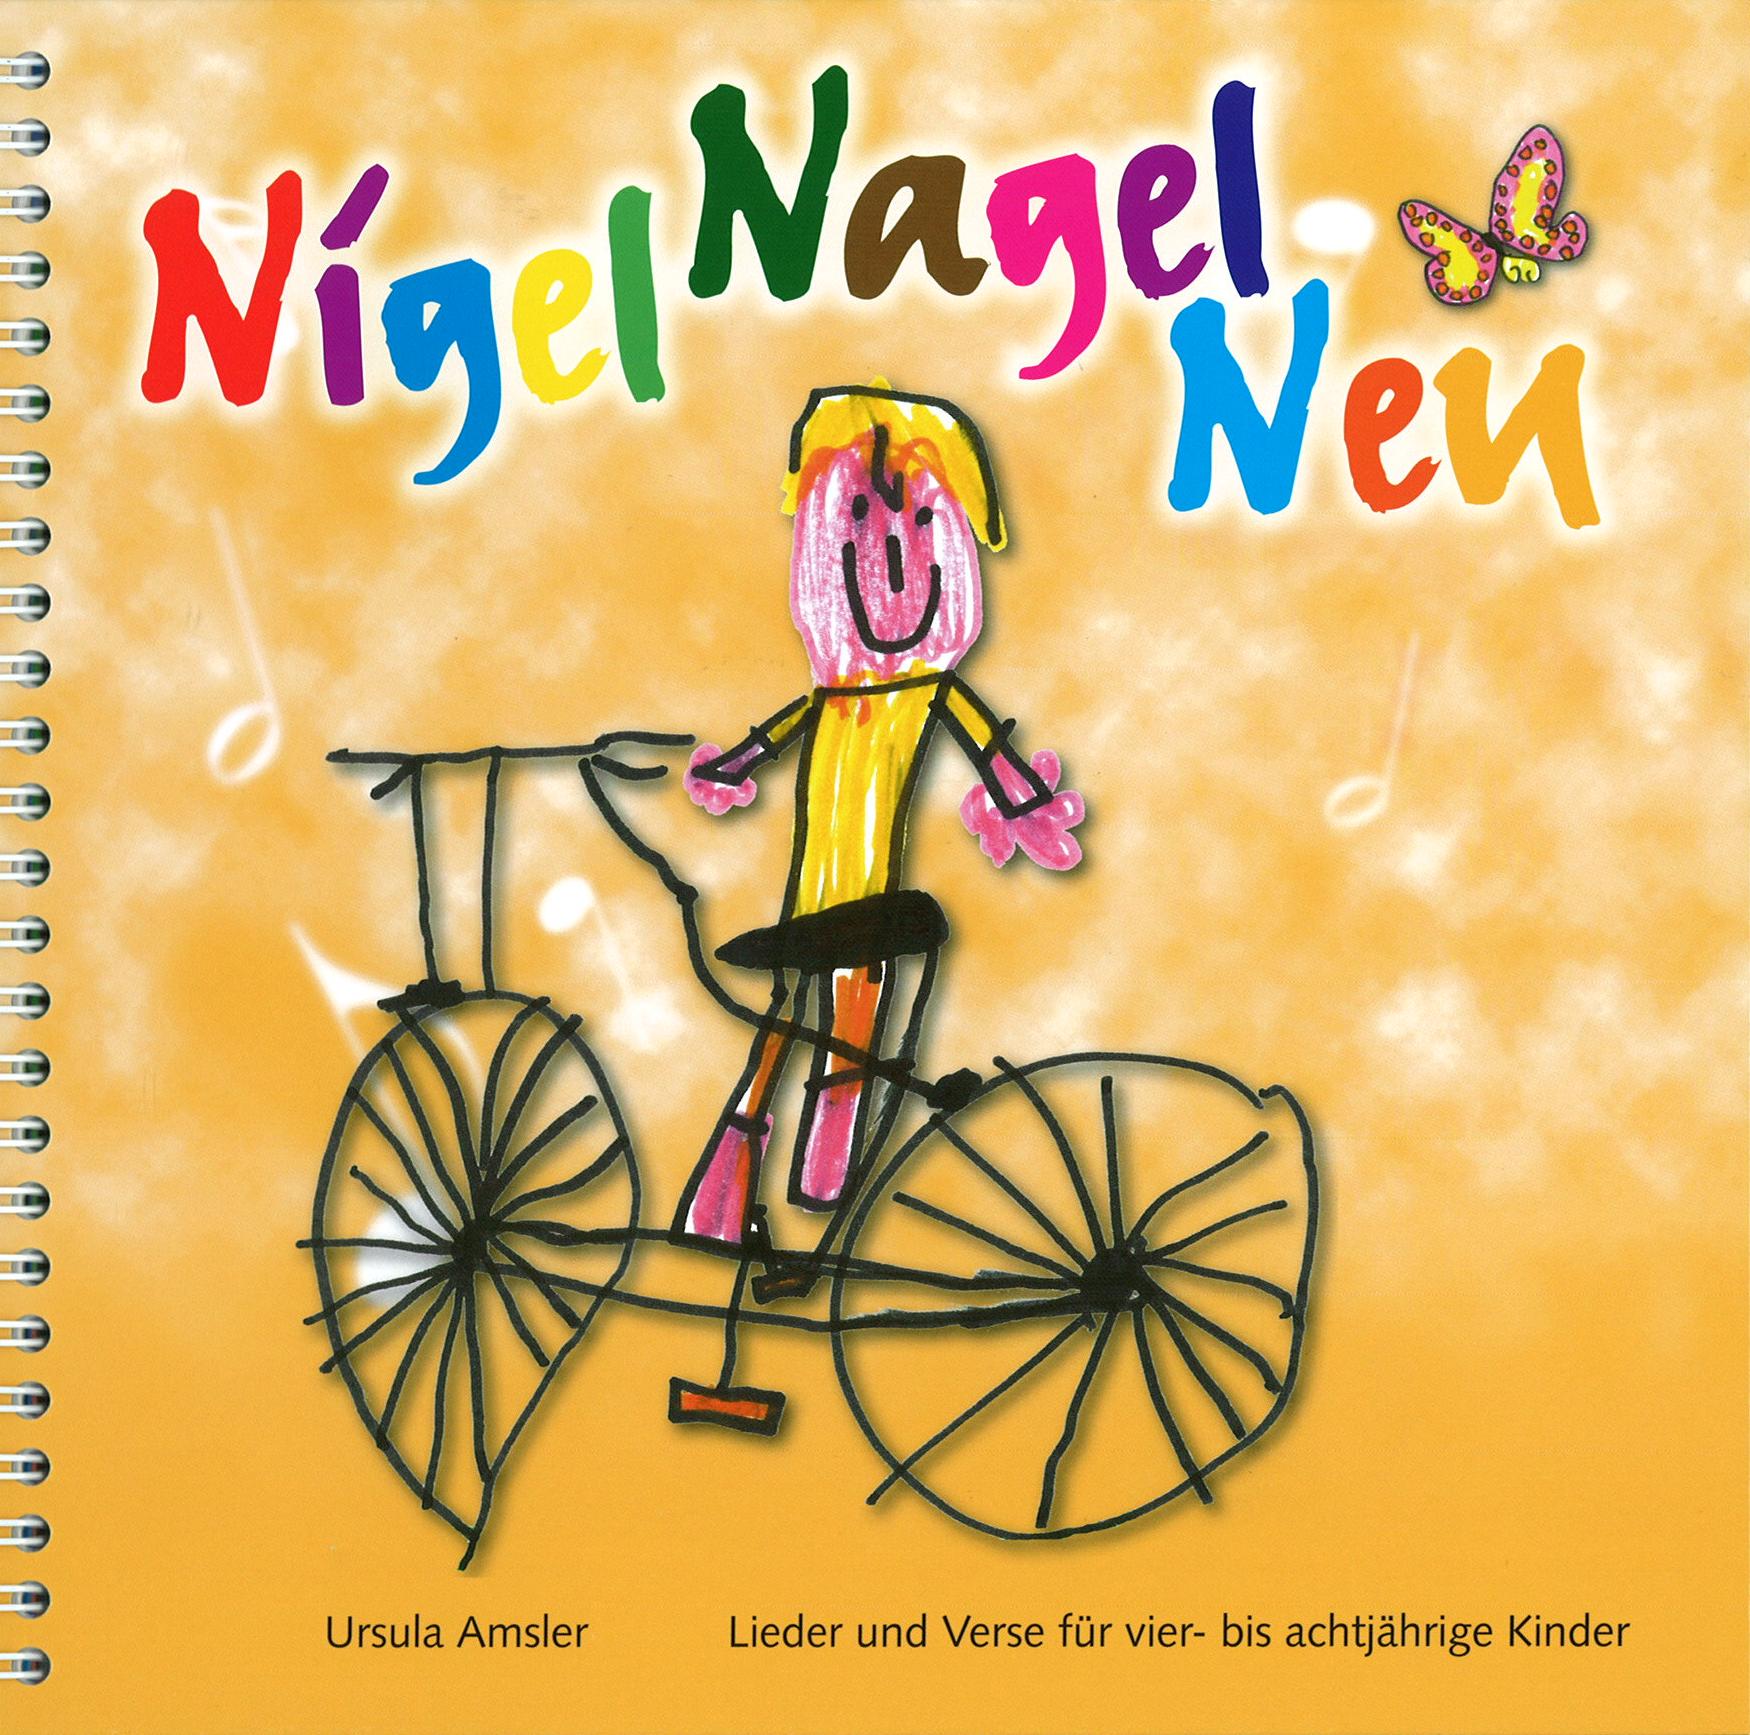 Nigel nagel neu, Lieder- und Versbuch, KG bis 1. Kl. SPEZIALBEST.